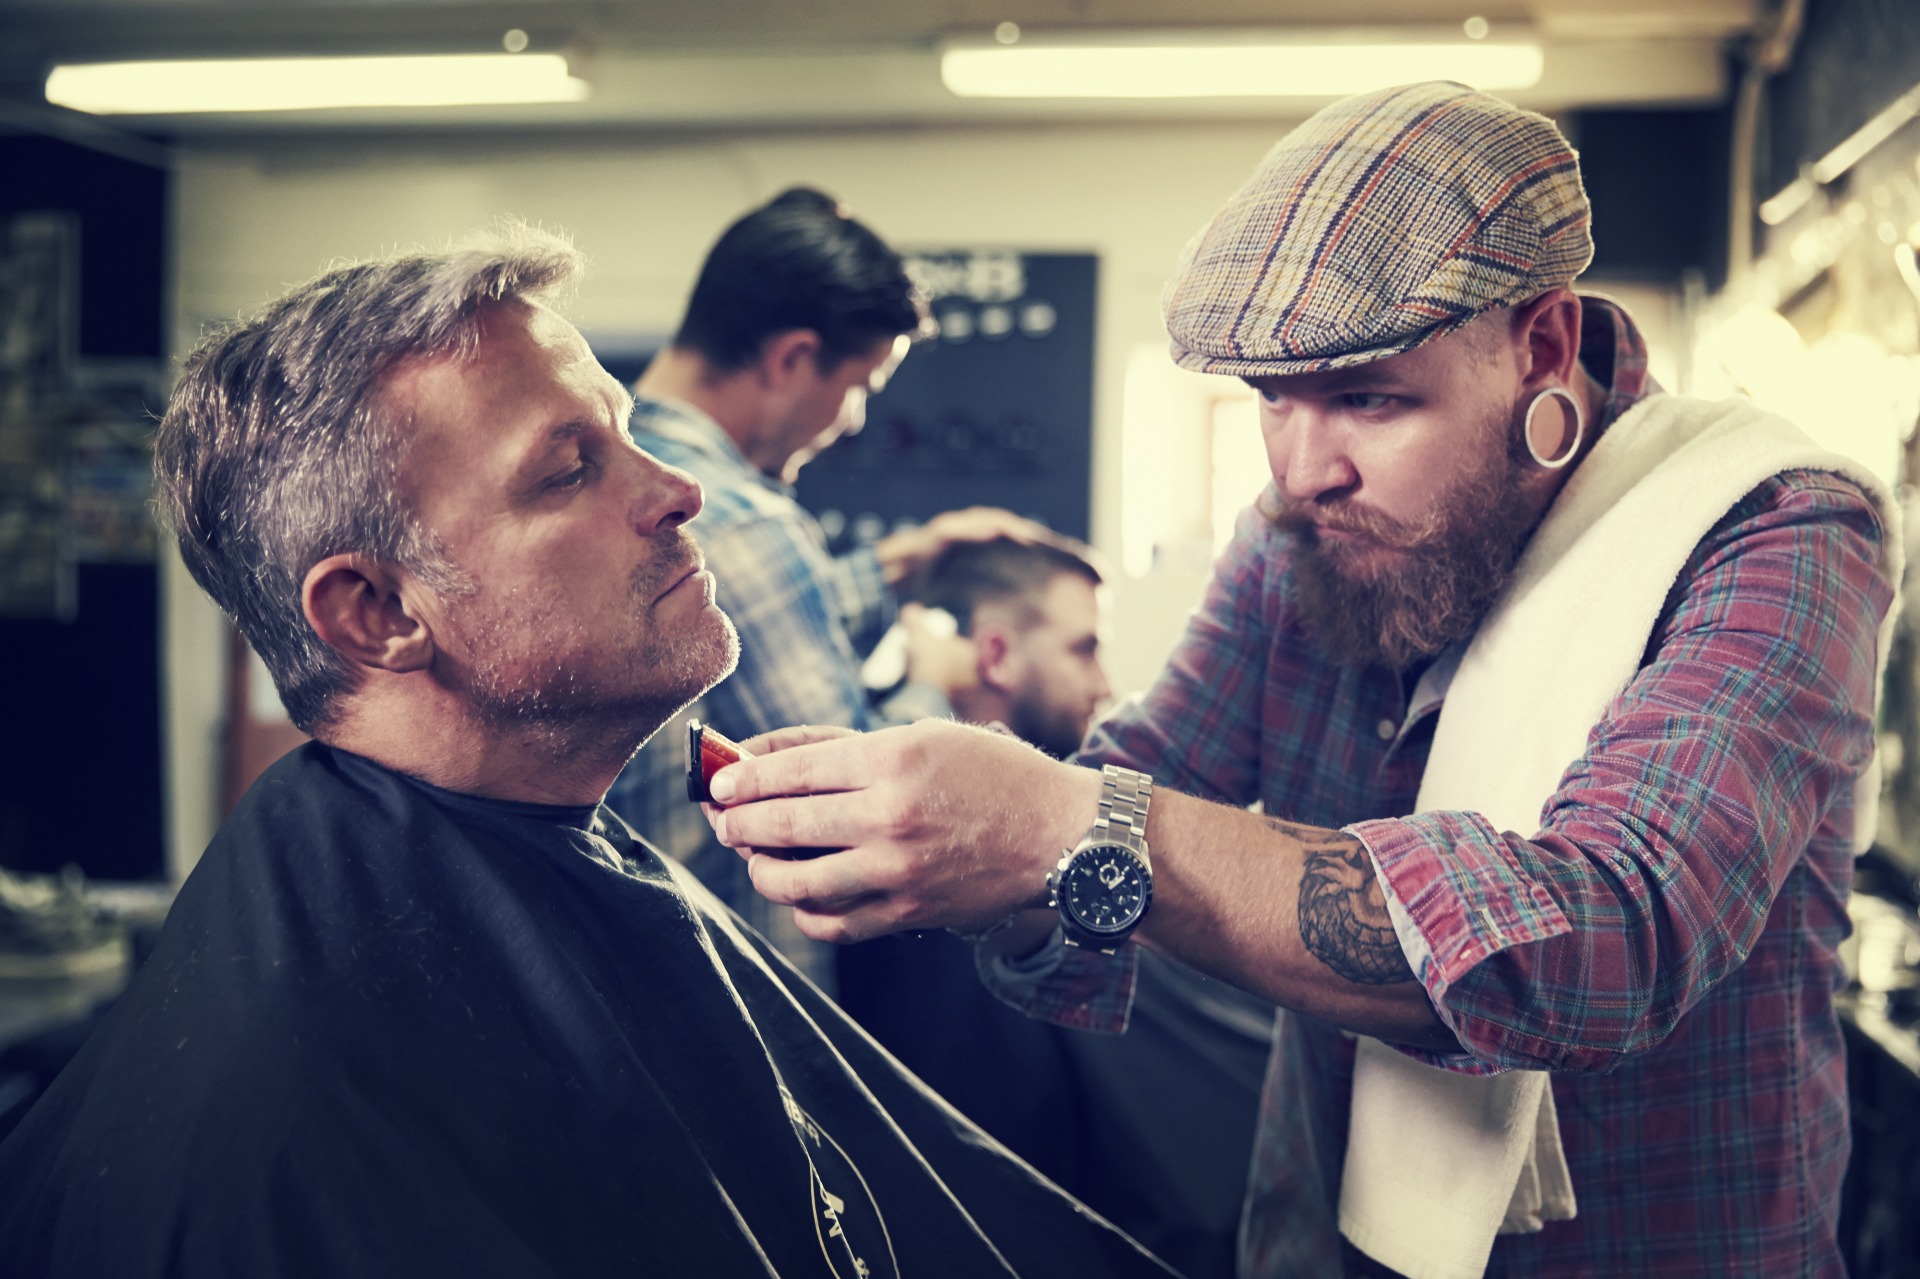 Nos salões de beleza e barbearias, profissionais tocam com constância no rosto e outras partes do corpo dos clientes. Imagem ilustrativa: arquivos Webnode.